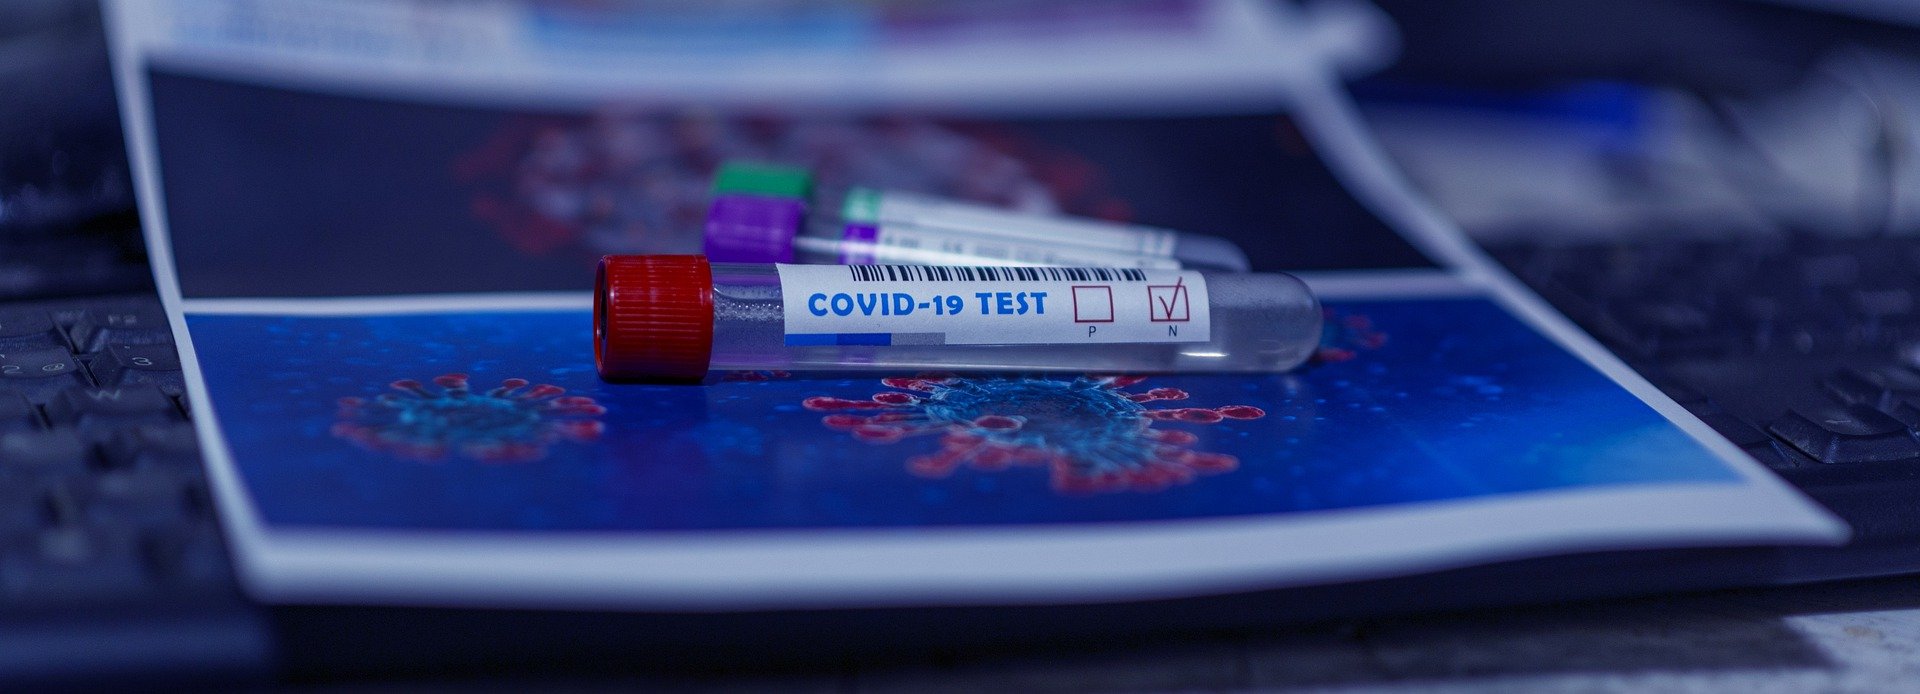 Hétőn kezdődik településünkön az általános iskolai, óvodai és bölcsődei dolgozók koronavírus-tesztelése